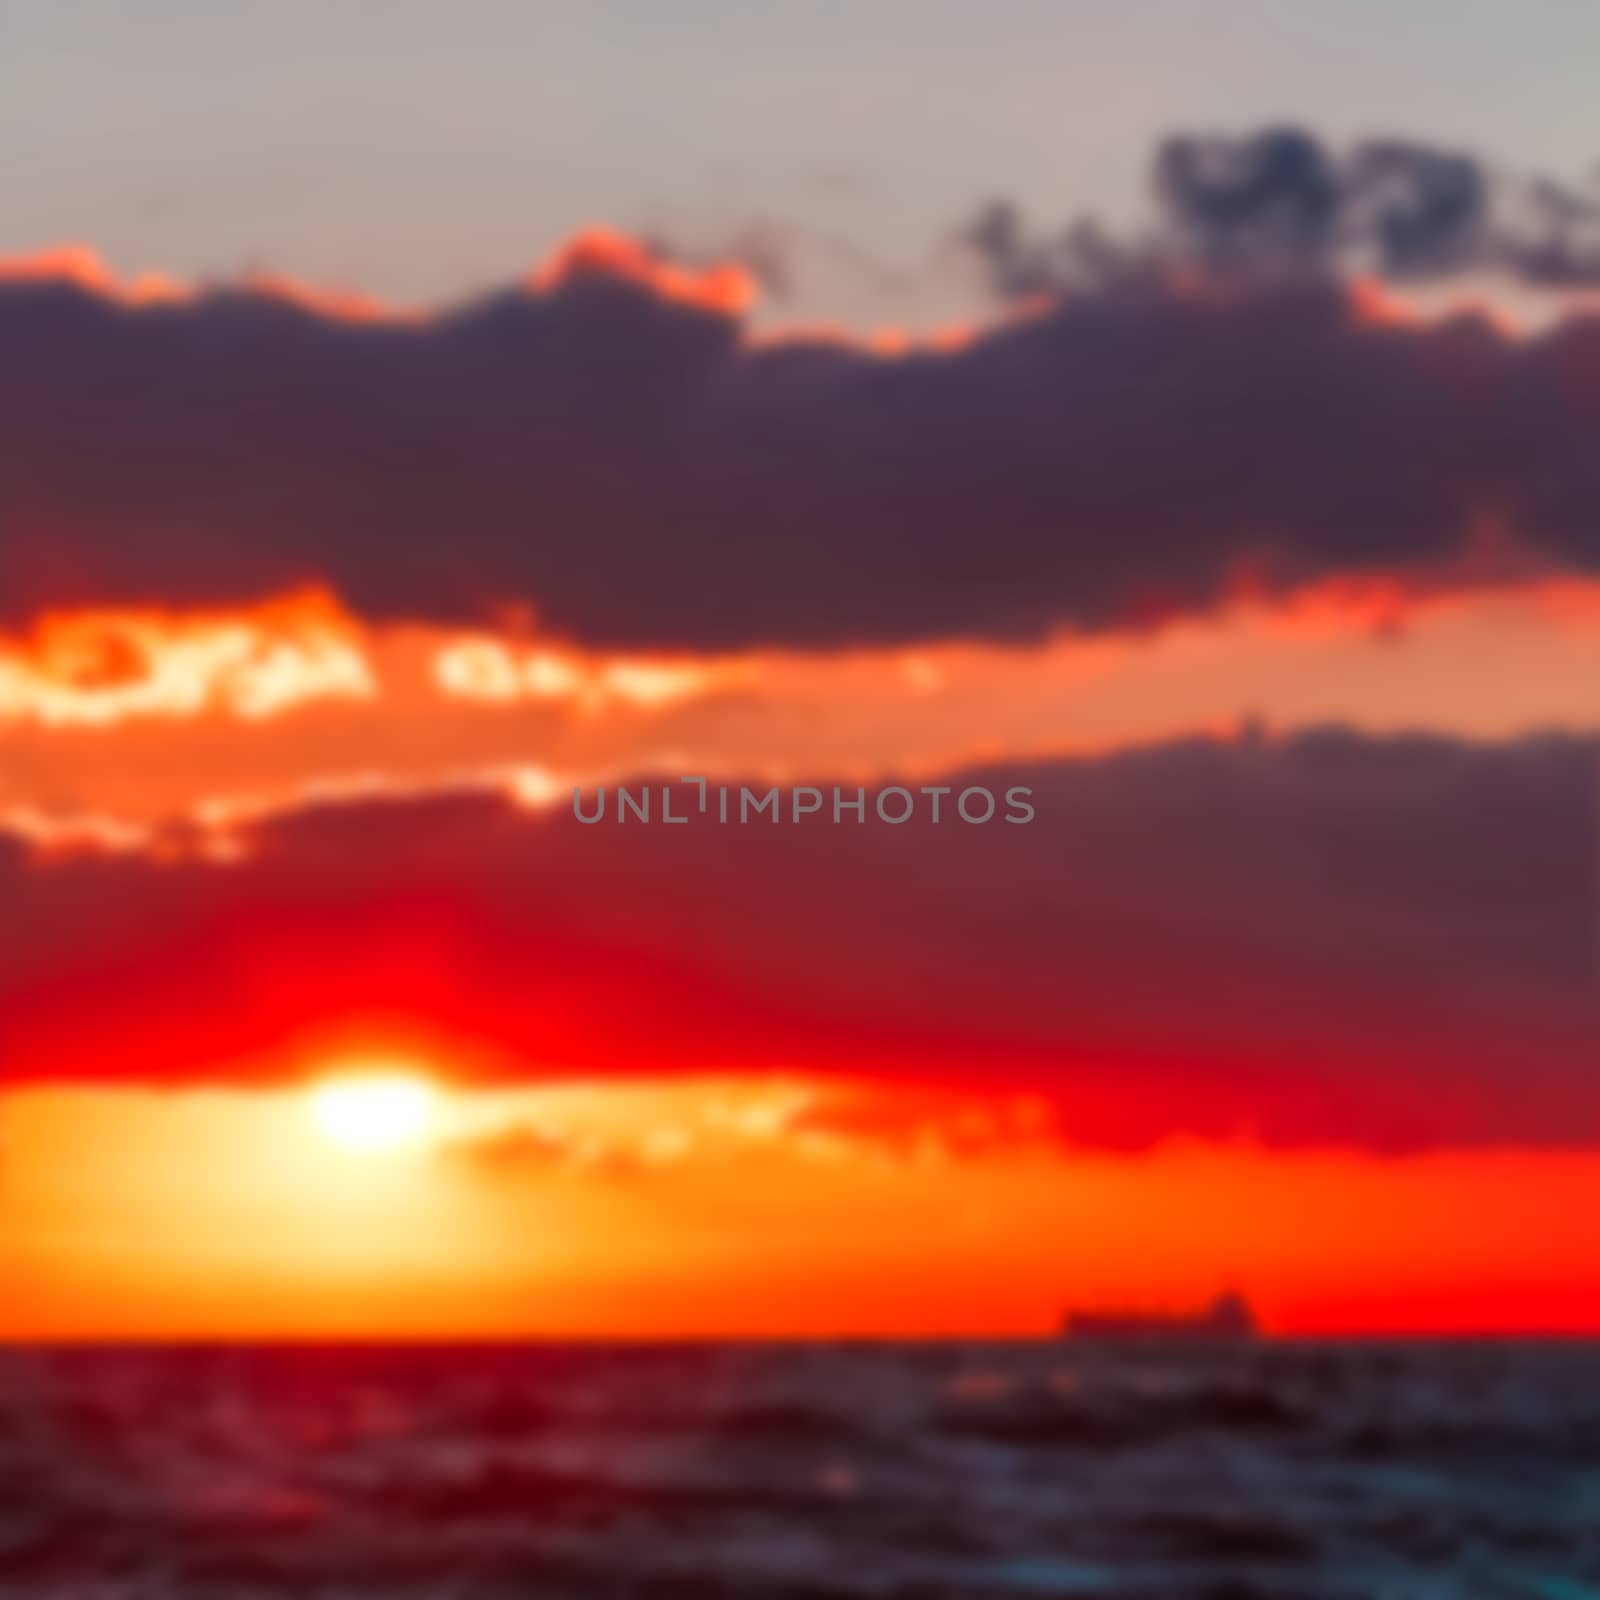 Hot sunset - blurred image by sengnsp